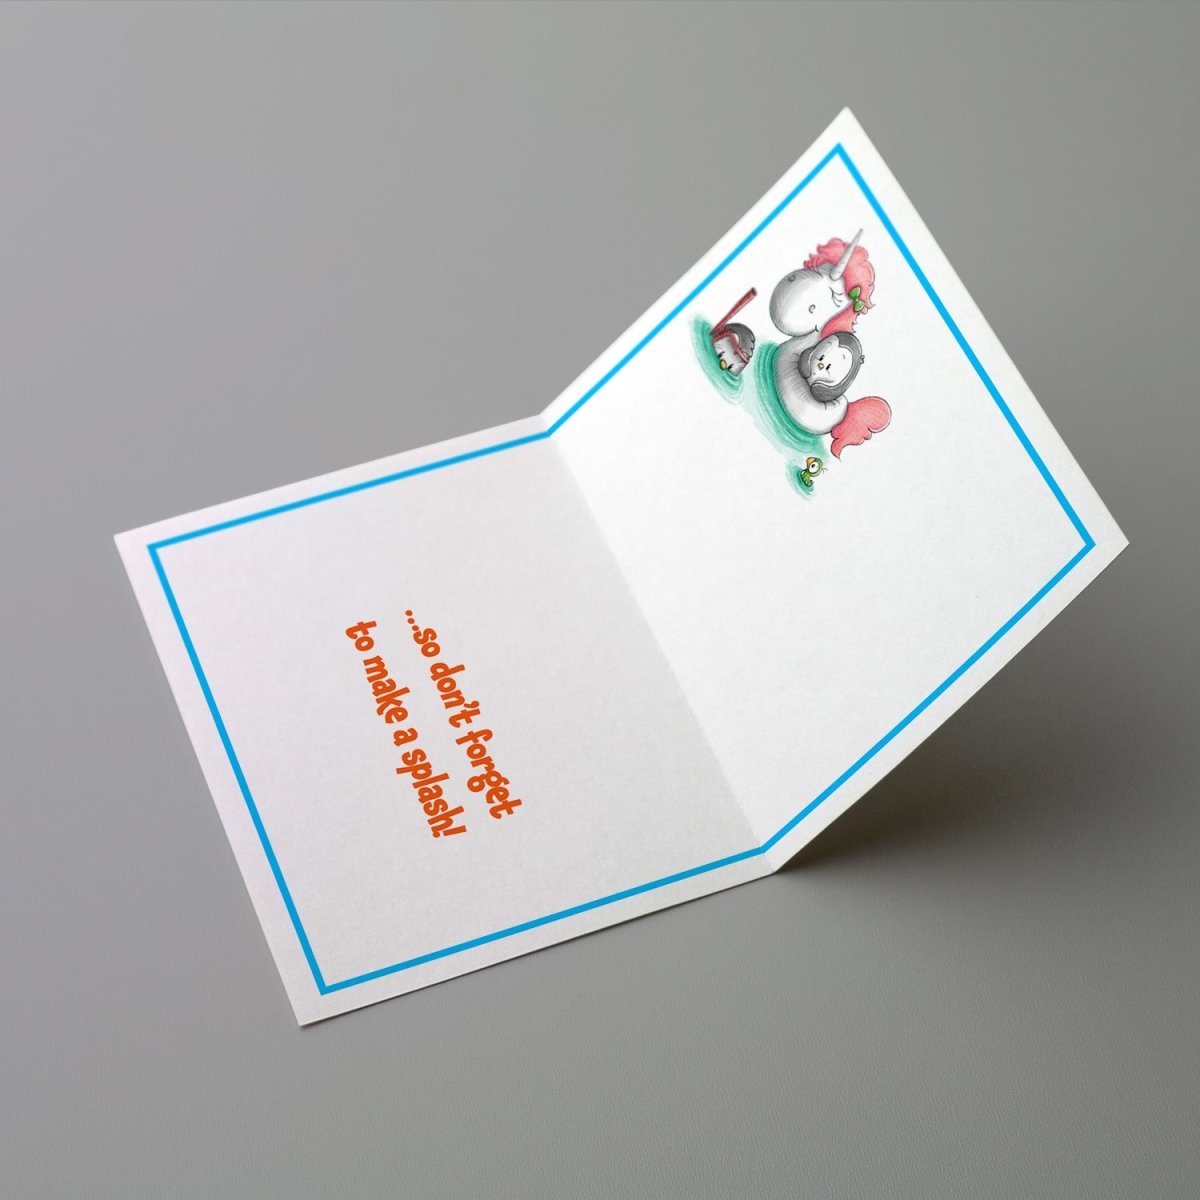 Pengrooms Greeting Cards - Paul Castle Studio